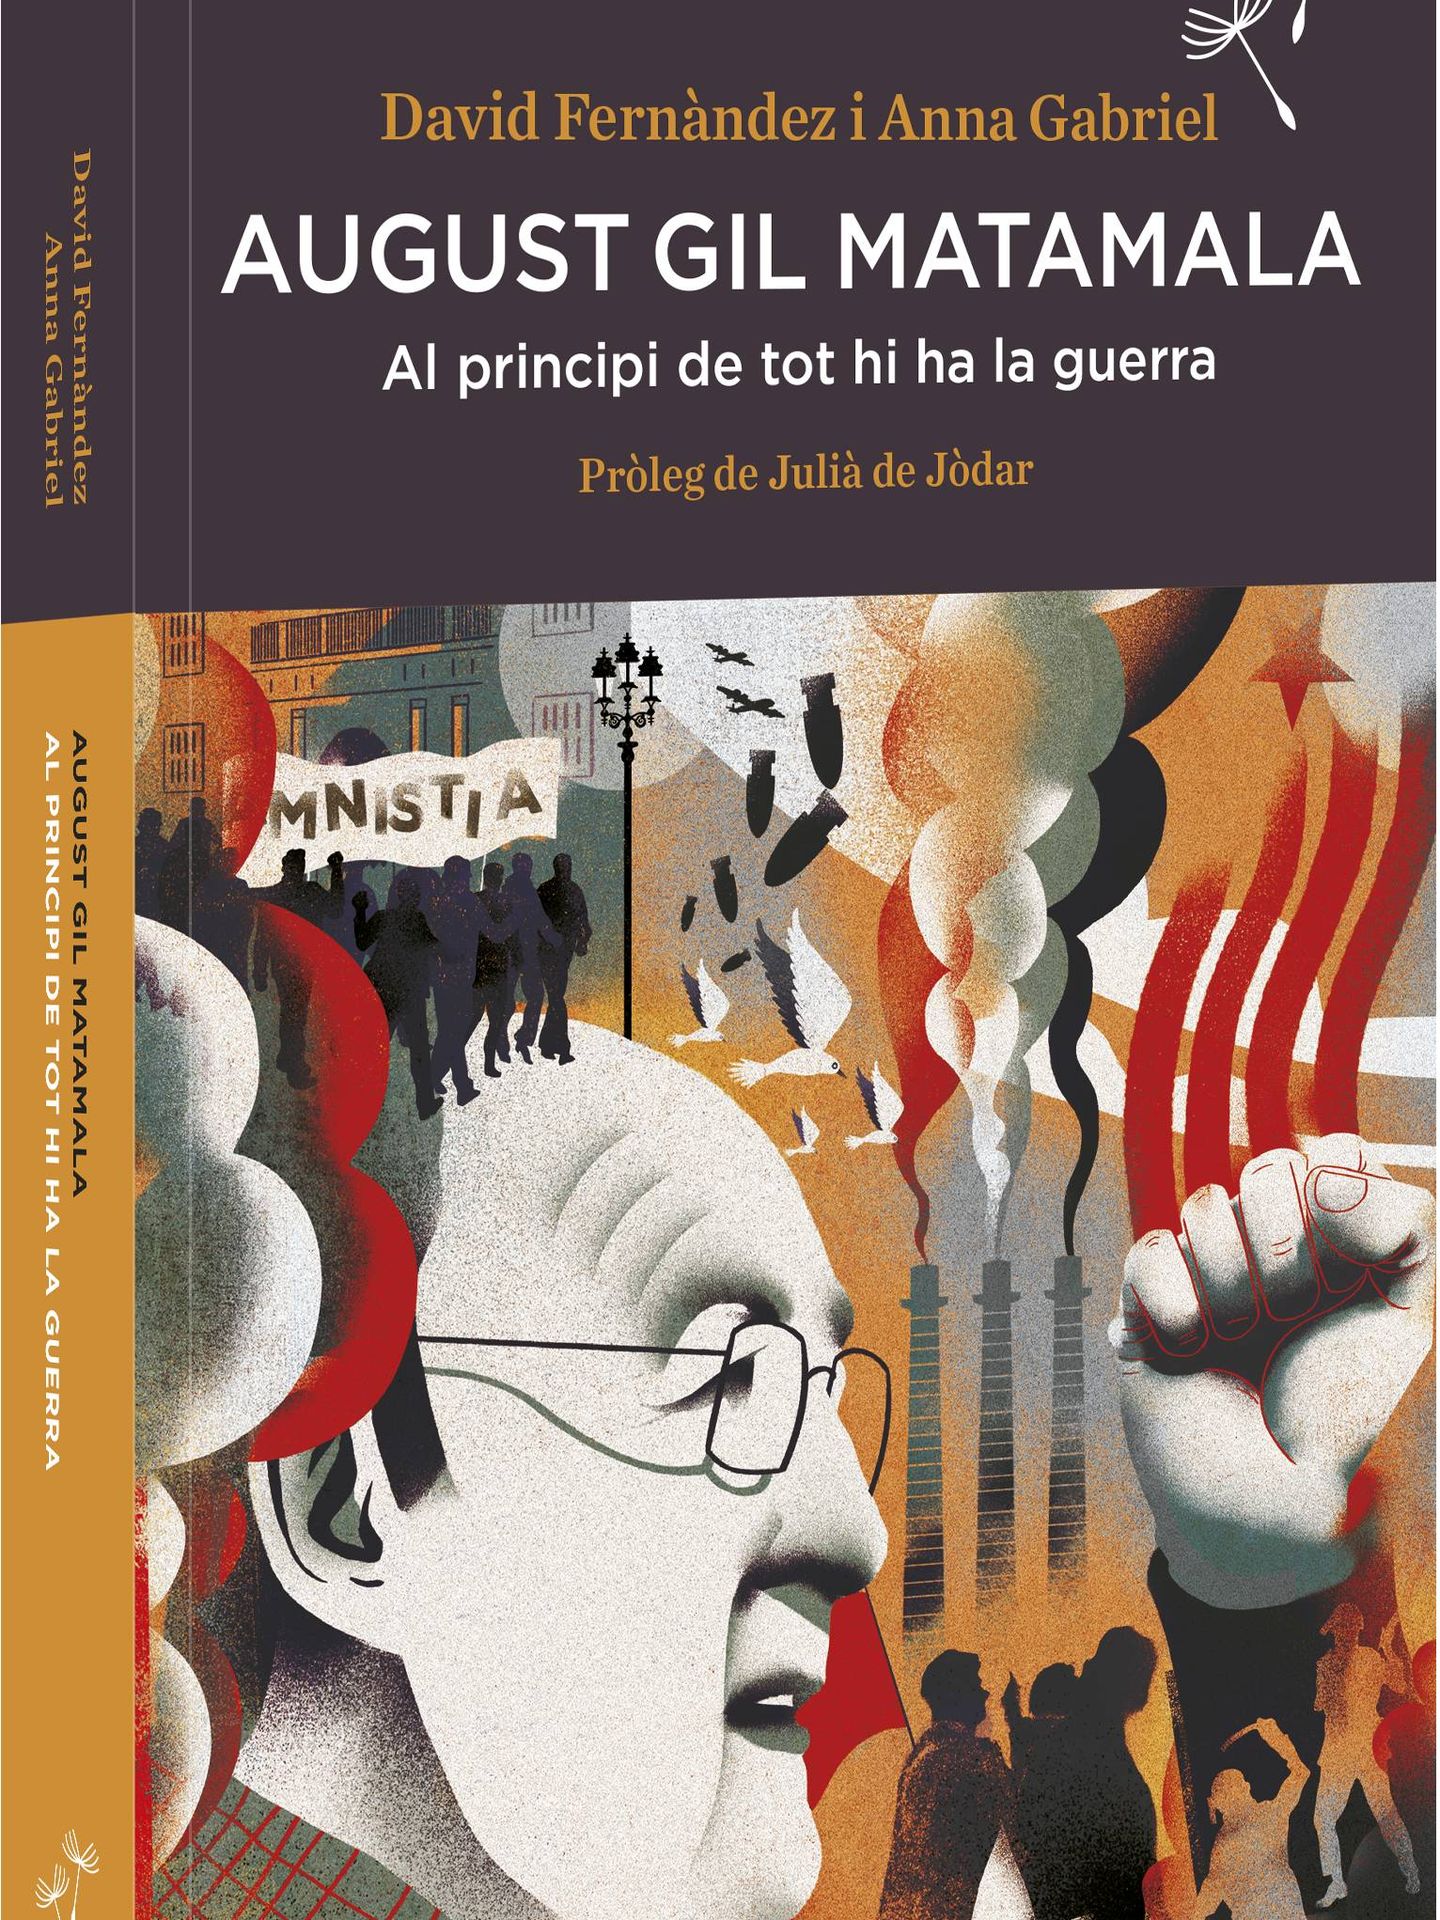 Memorias de Augusta Gil Matamala, escritas por Anna Gabriel y David Fernández. 